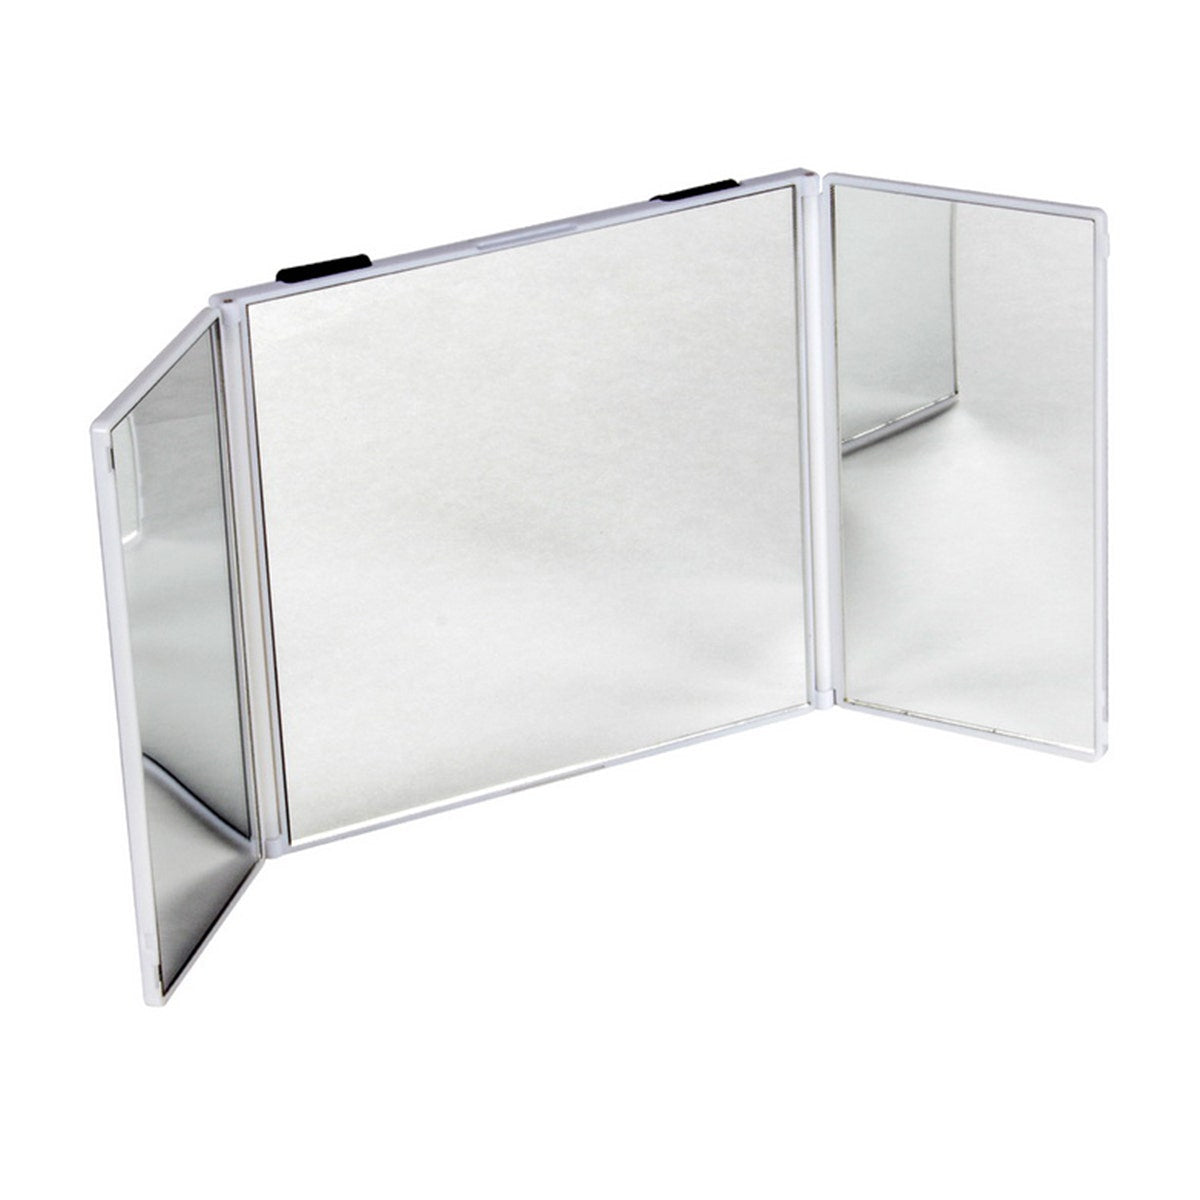 Trifold Car Visor Vanity Mirror - Secure, Adjustable Straps